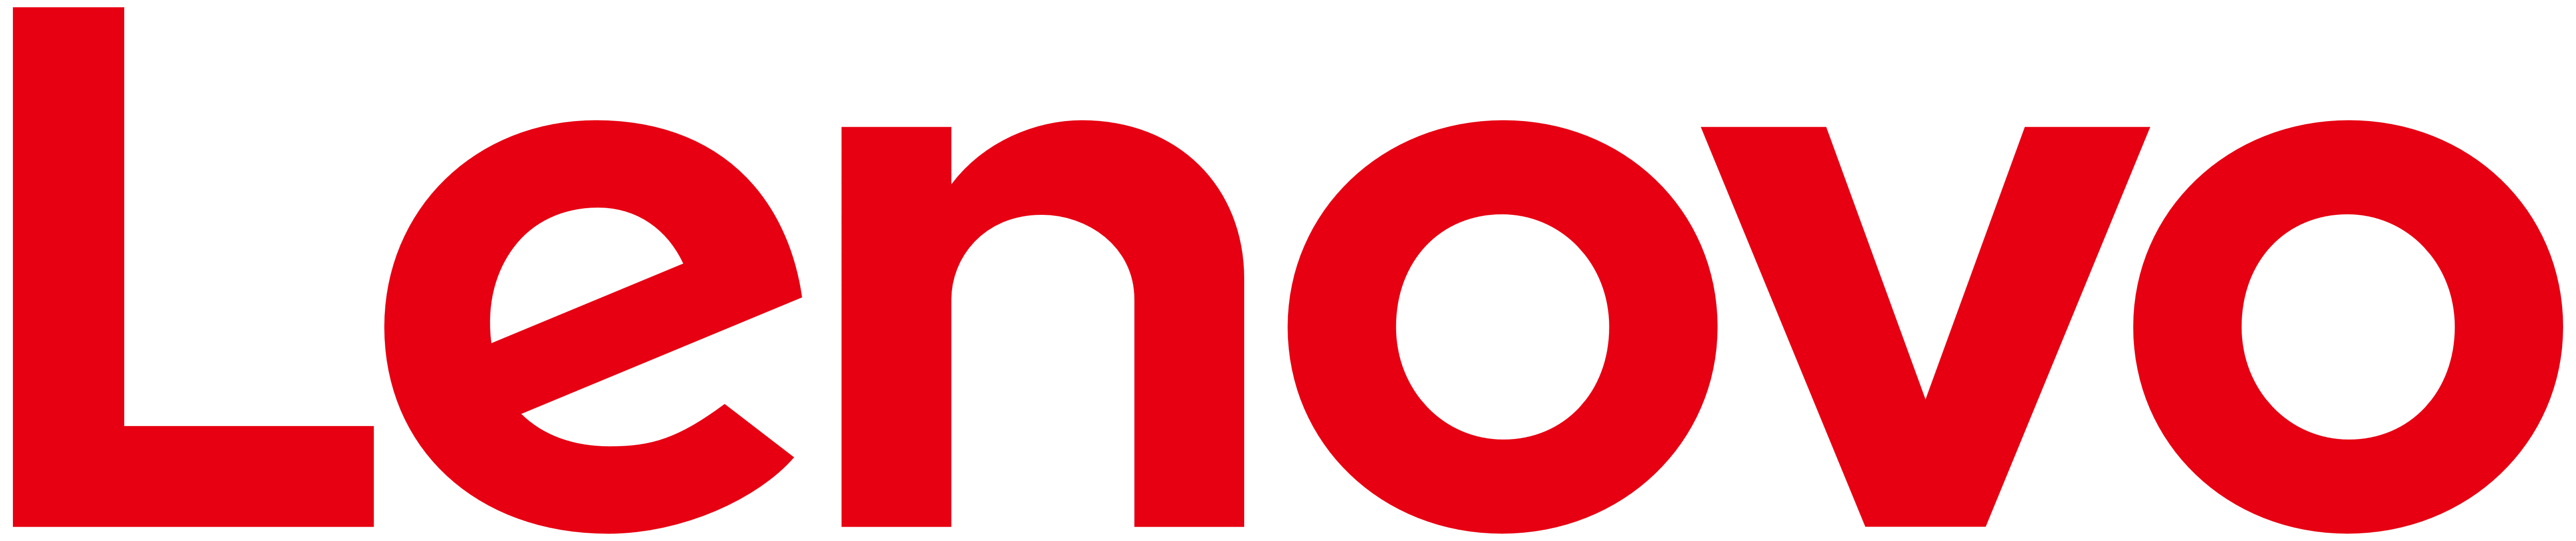 Lenovo Logo Png Download Imag